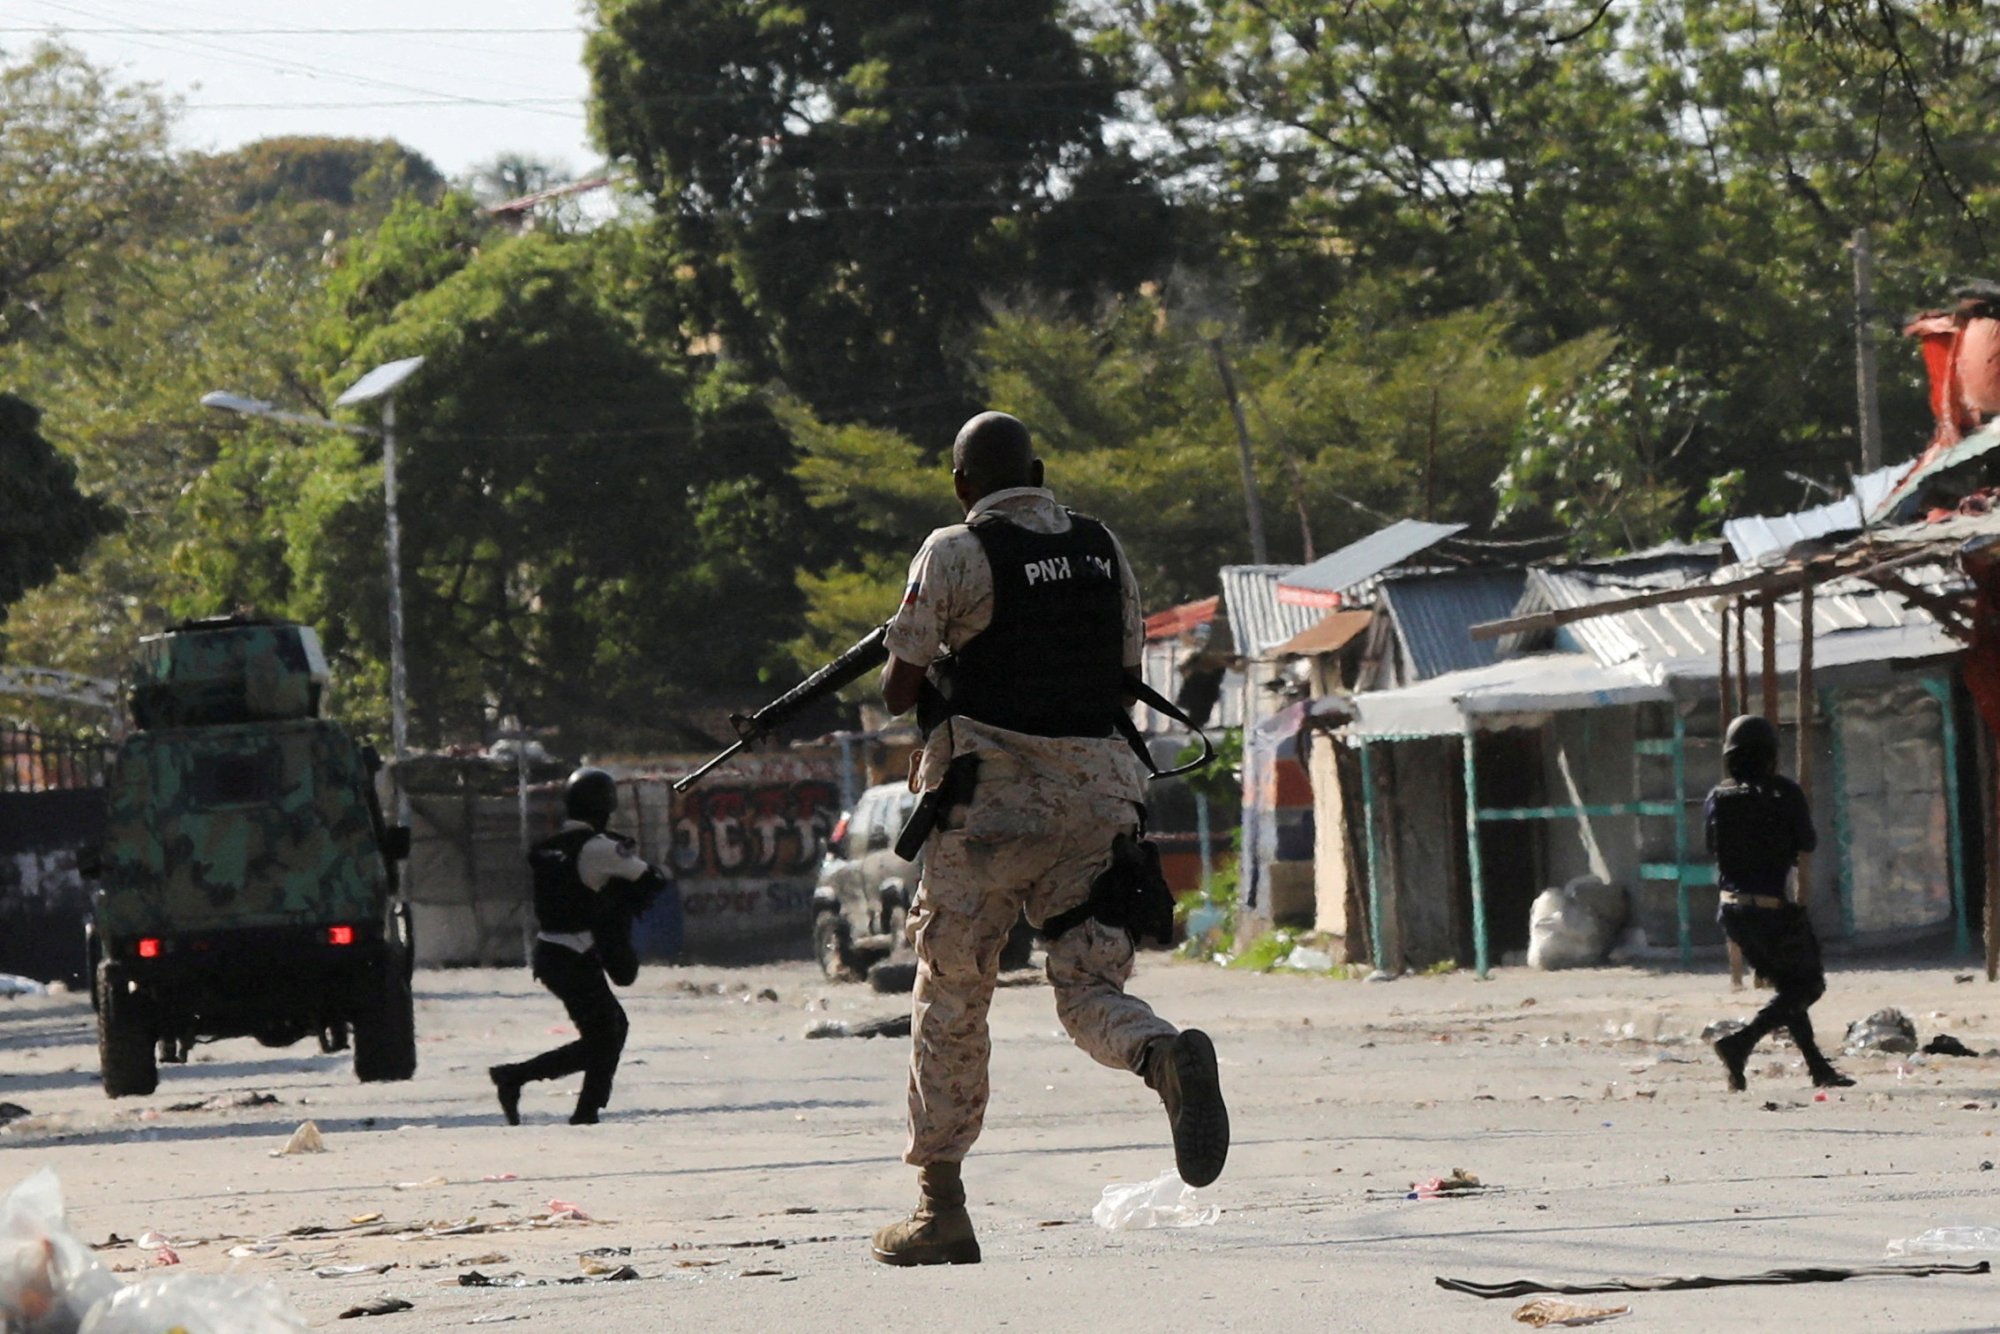 Αϊτή: Ένοπλη επίθεση συμμοριών στη μεγαλύτερη φυλακή της χώρας - Απέδρασε μεγάλος αριθμός κρατoύμενων